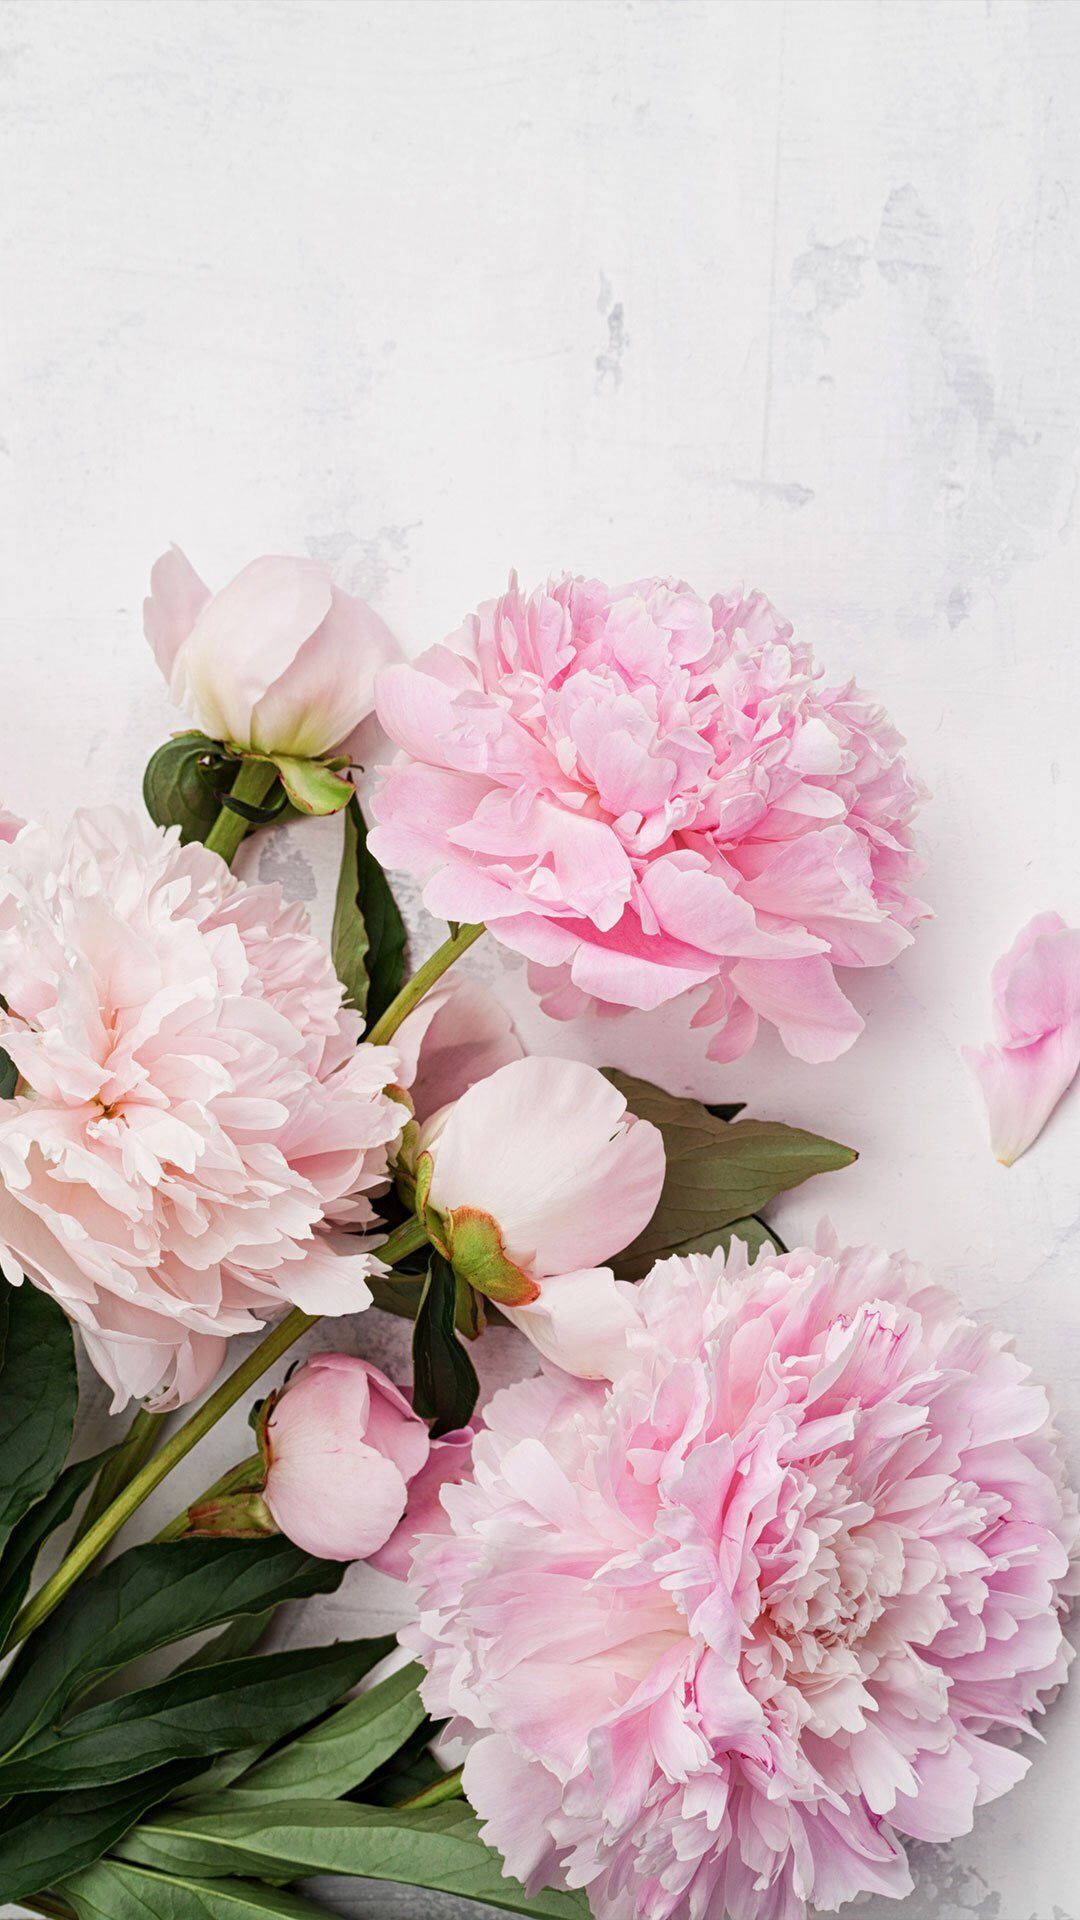 Khám phá thiên nhiên tuyệt đẹp qua hình nền hoa mẫu đơn màu hồng. Bức tranh sống động này sẽ đem đến cho bạn cảm giác thư thái và tươi mới. Hãy để cho vẻ đẹp của hoa mẫu đơn truyền cảm hứng cho ngày mới của bạn.